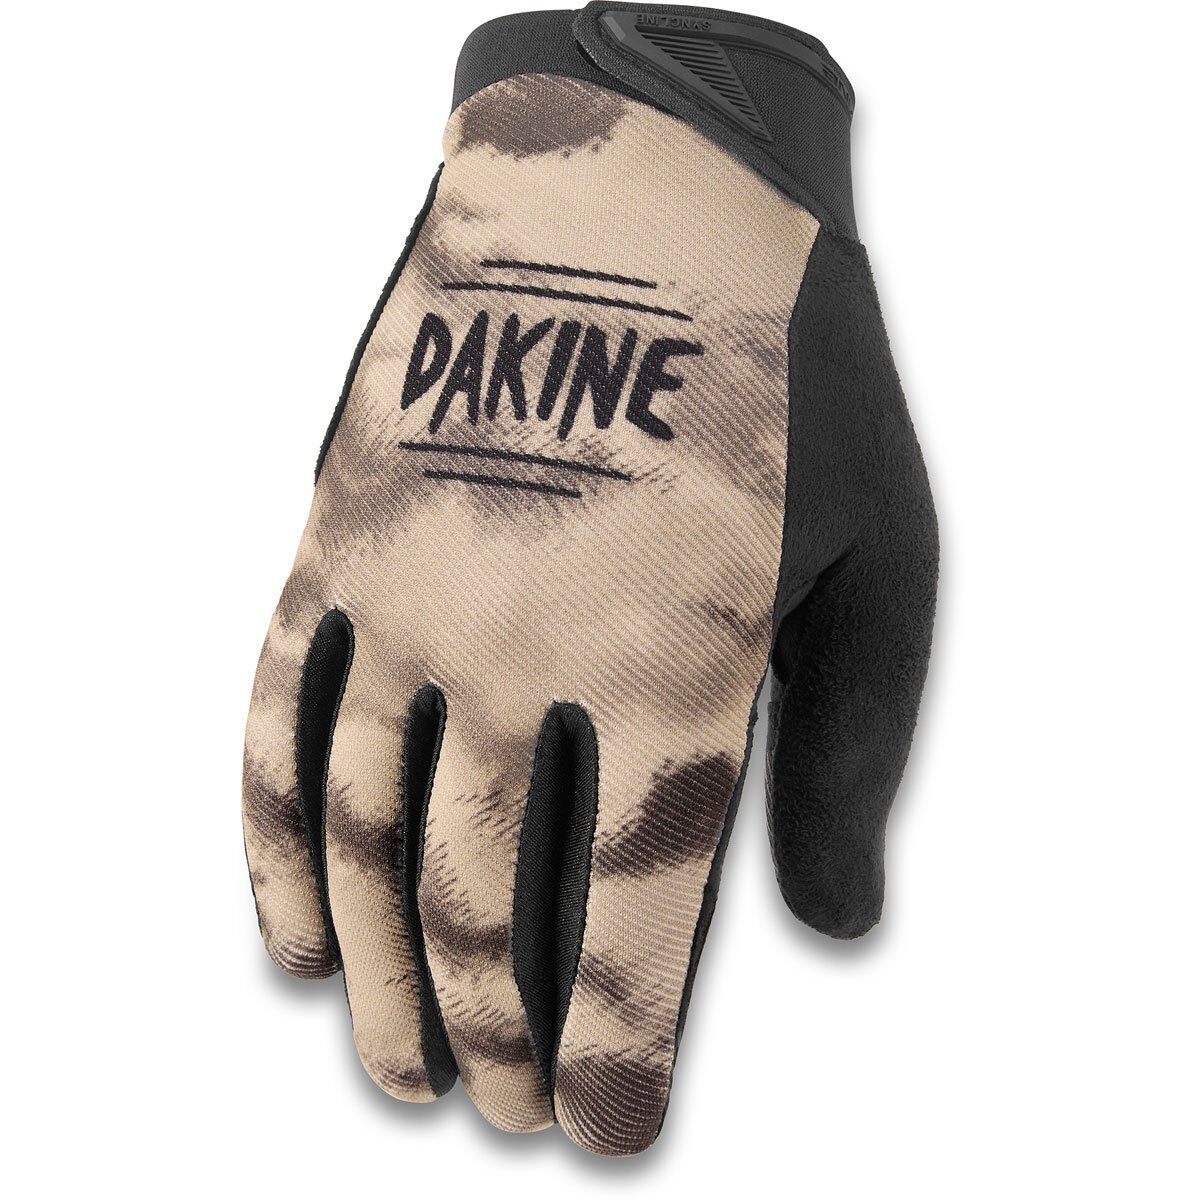 Dakine Syncline - MTB Gloves - Men's